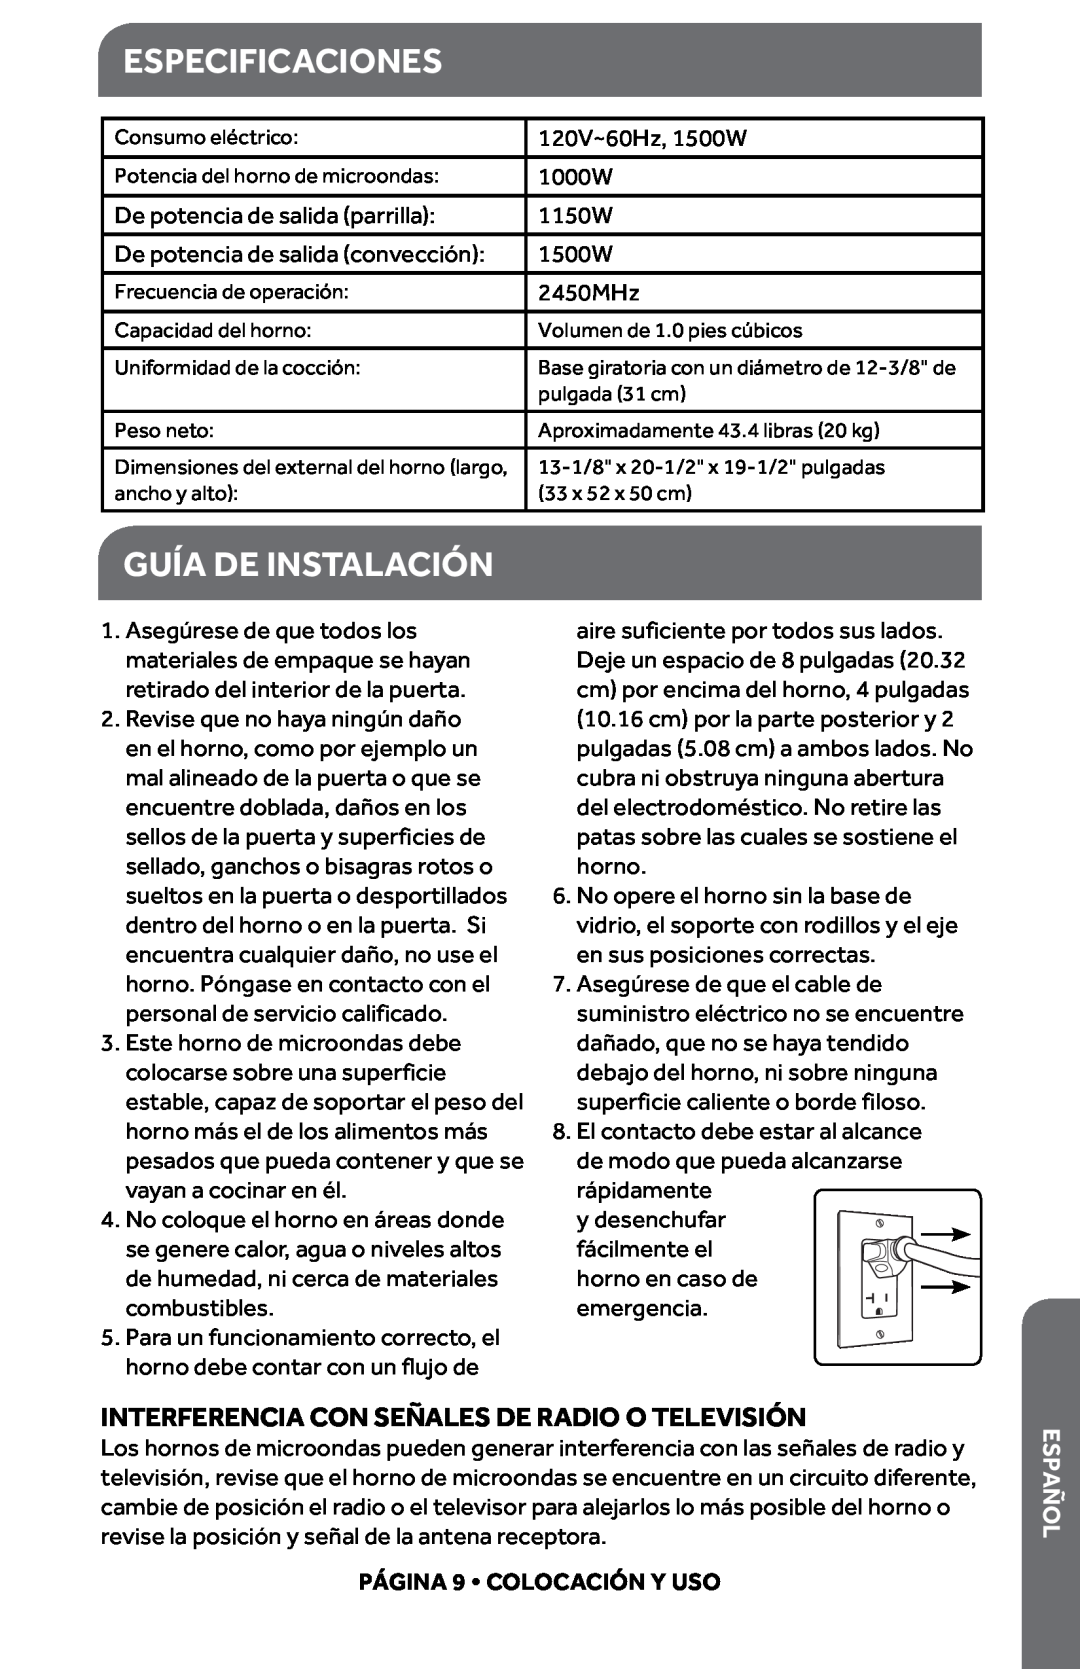 Haier HMC1085SESS user manual Especificaciones, Guía De Instalación, Interferencia Con Señales De Radio O Televisión, añEsp 